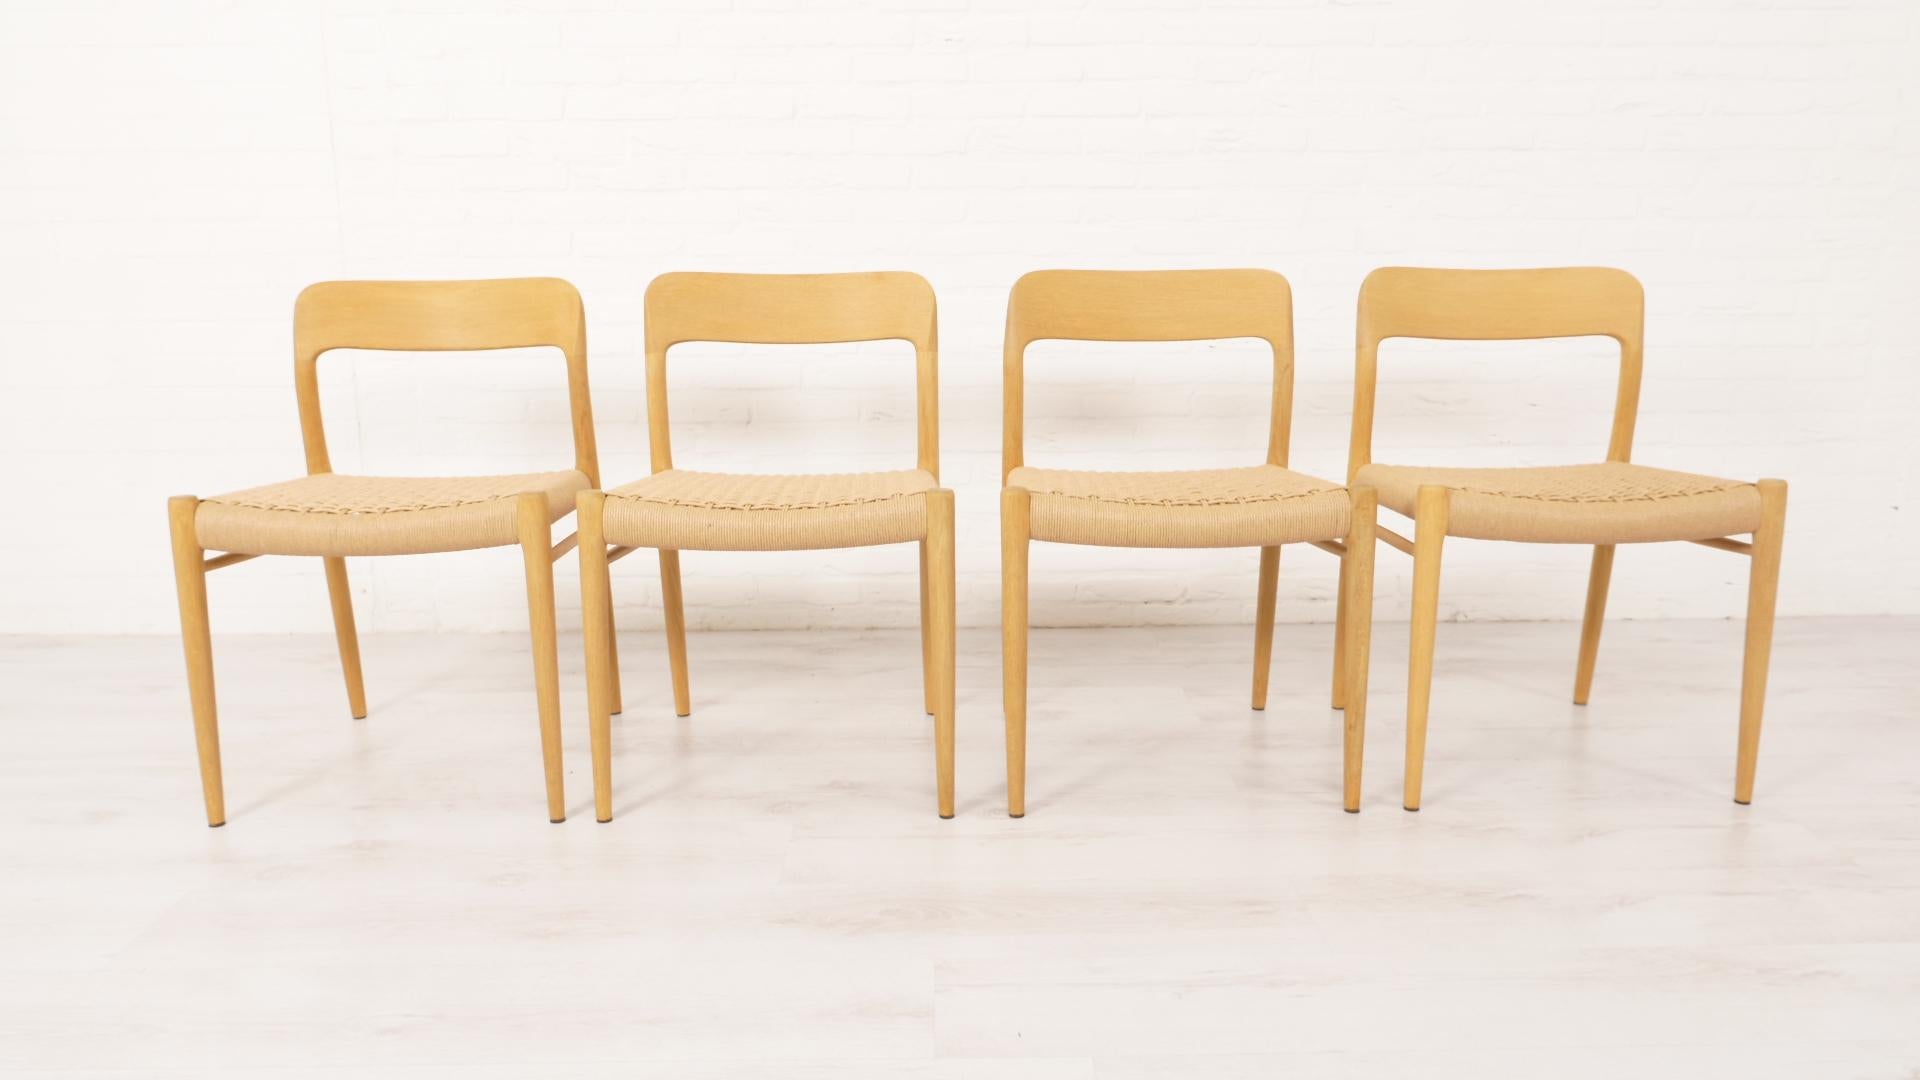 Satz von 4 schönen dänischen Vintage-Esszimmerstühlen. Diese Stühle wurden von Niels Otto Møller entworfen. Die Stühle sind aus Eichenholz gefertigt und mit neuen Papierkordeln ausgestattet. Die Rahmen sind alle mit dänischer Seife